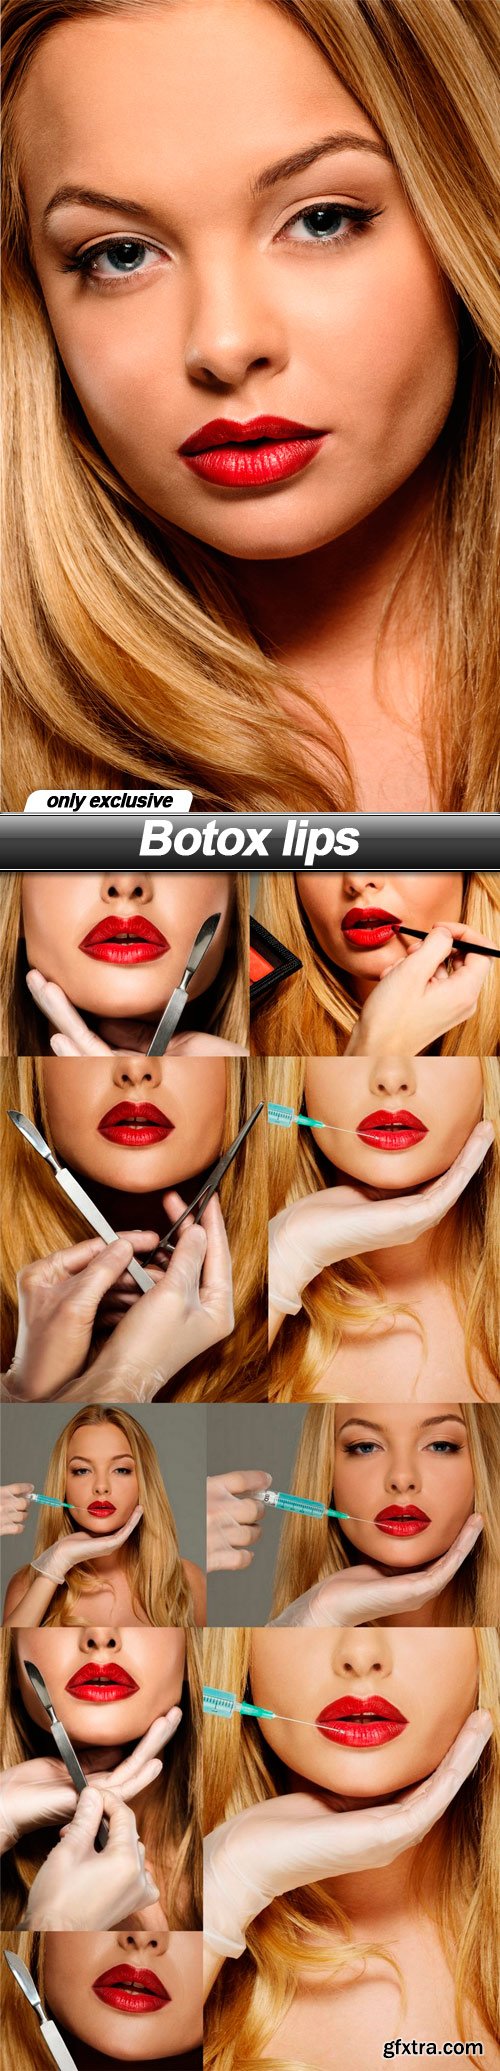 Botox lips - 10 UHQ JPEG